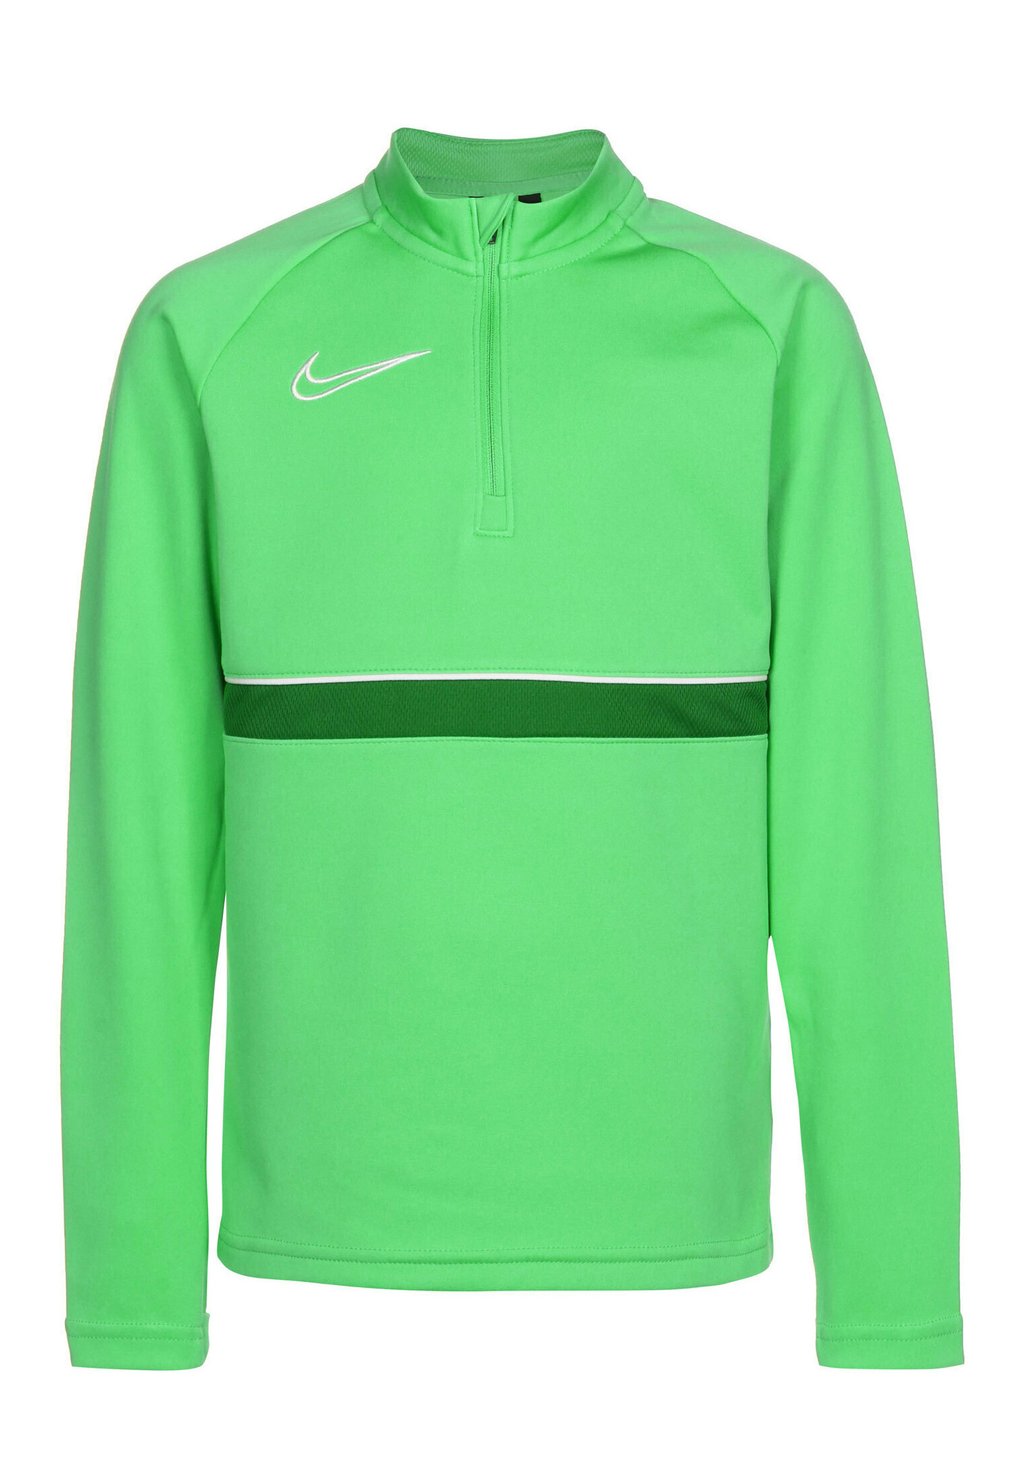 Спортивная футболка Academy 21 Drill Unisex Nike, цвет light green spark / white / pine green кроссовки clae bradley california unisex white pine green